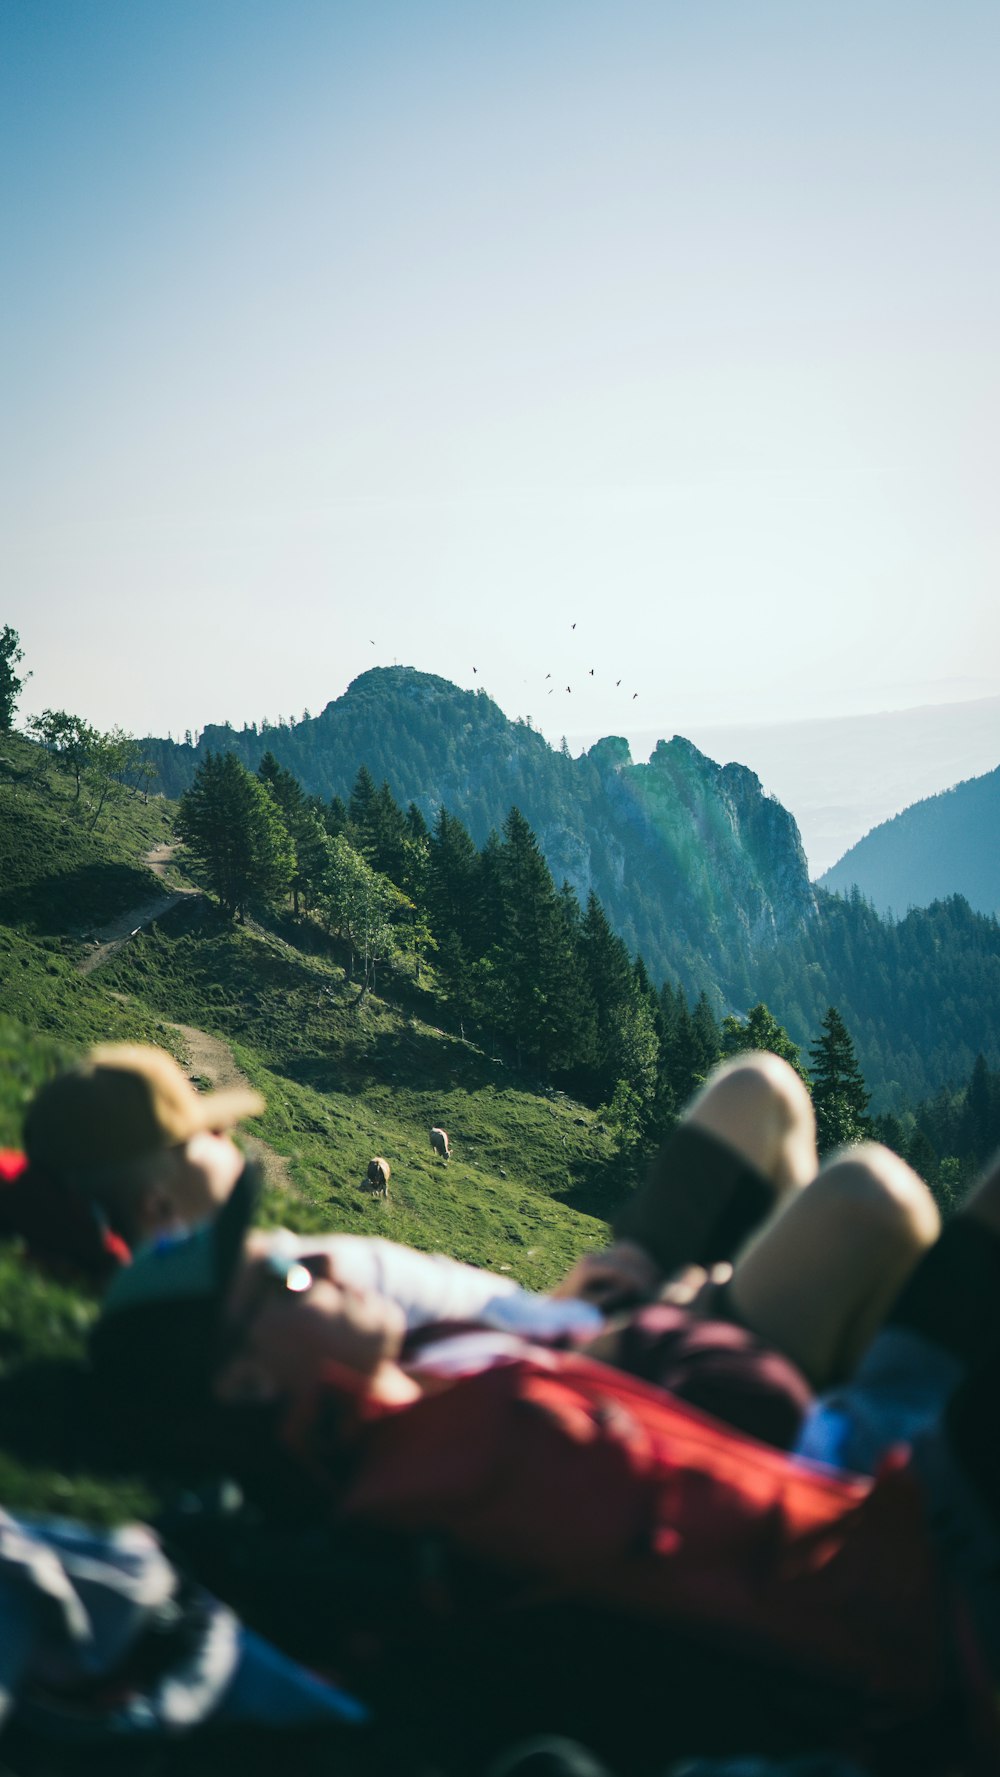 zwei Menschen, die tagsüber auf der grünen Wiese liegen und den Berg betrachten